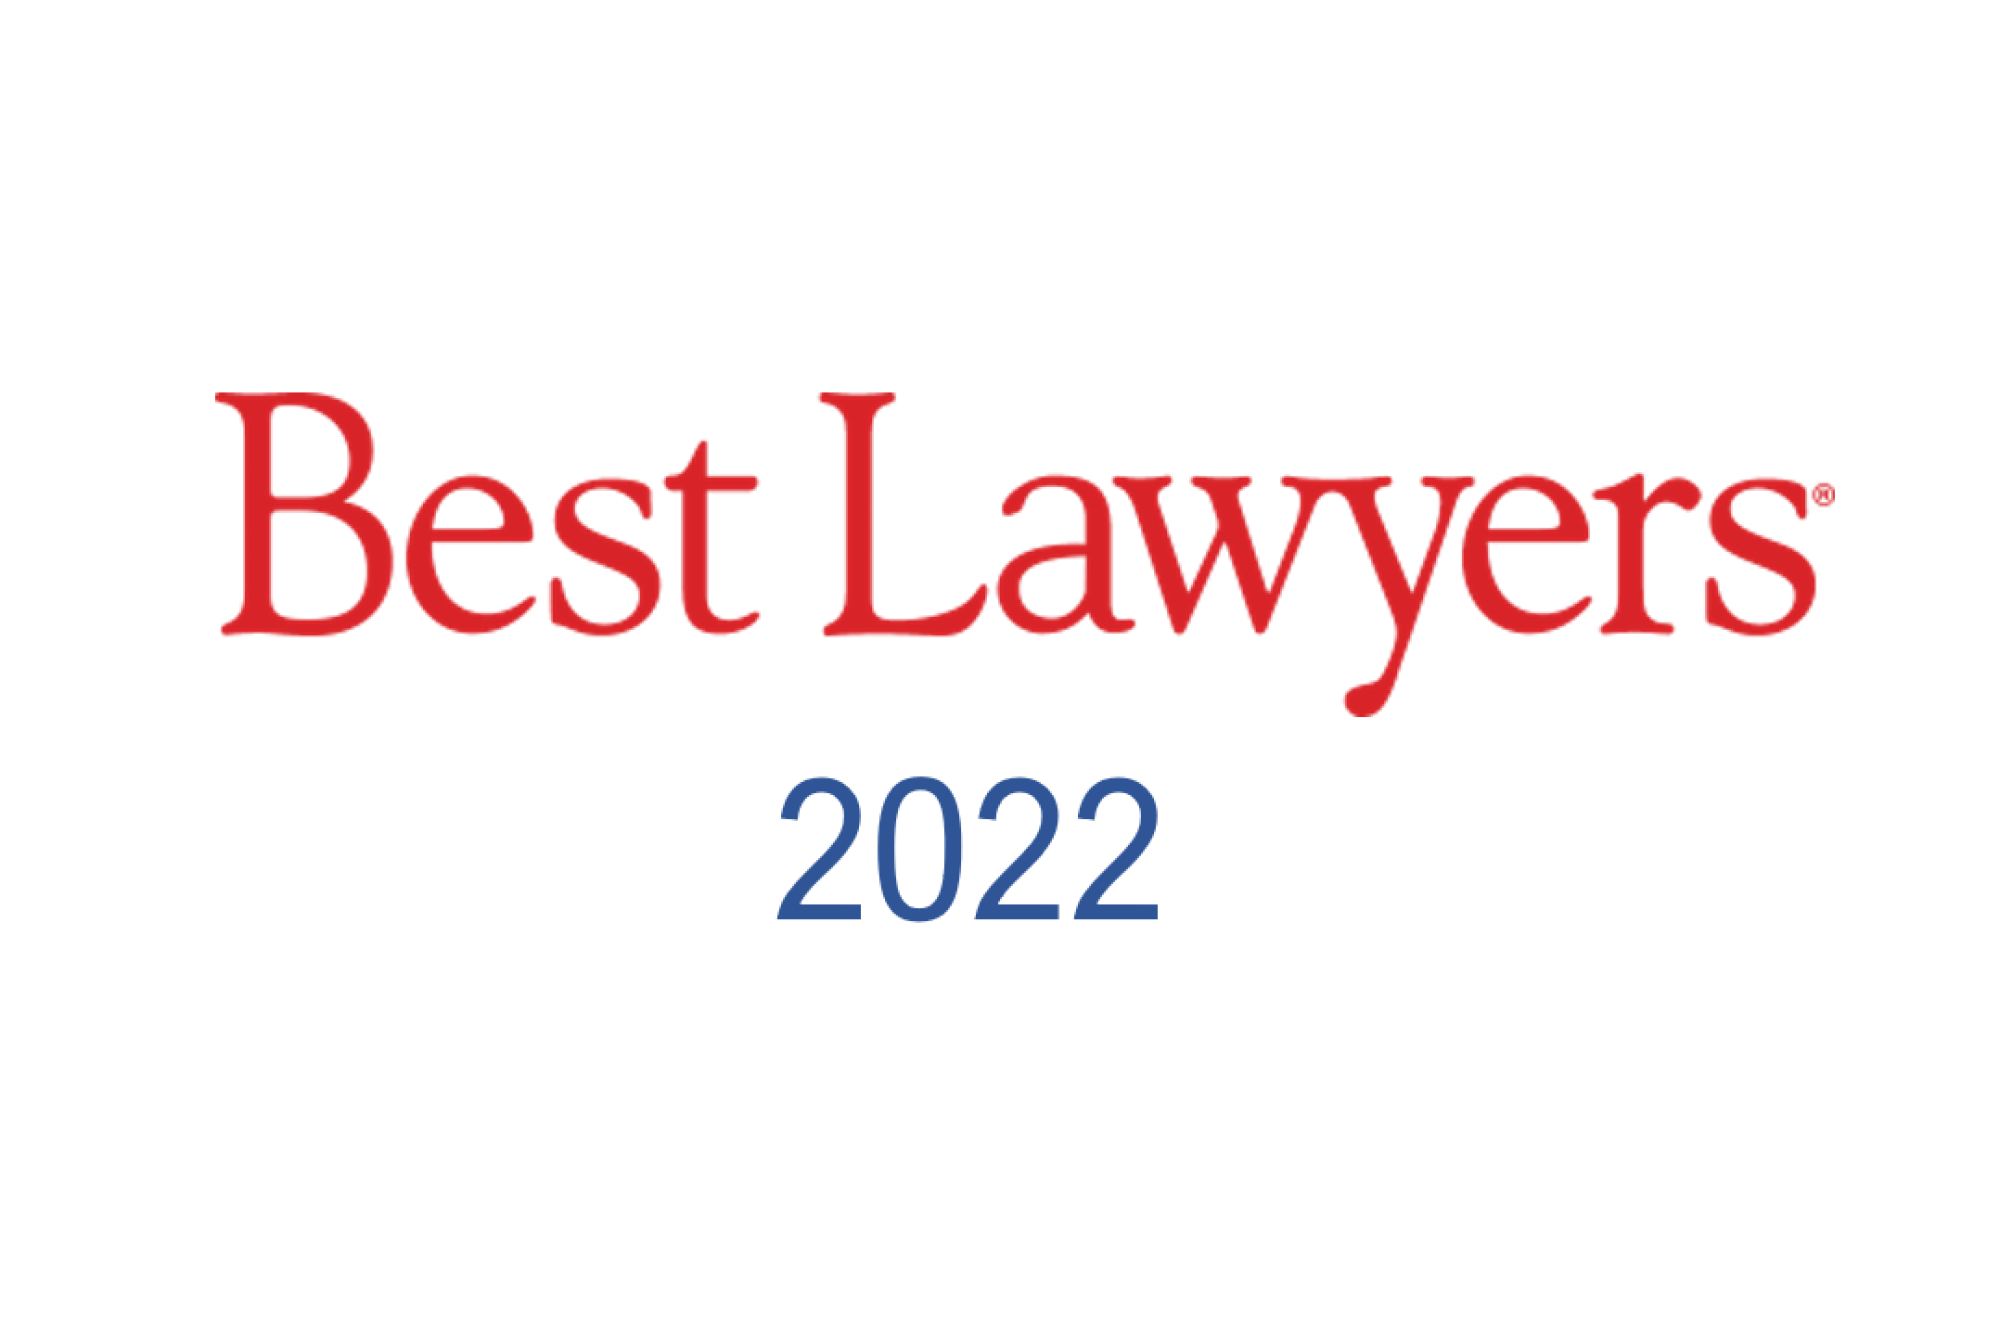 23 from Wotton + Kearney recognised in 2022 Best Lawyers list